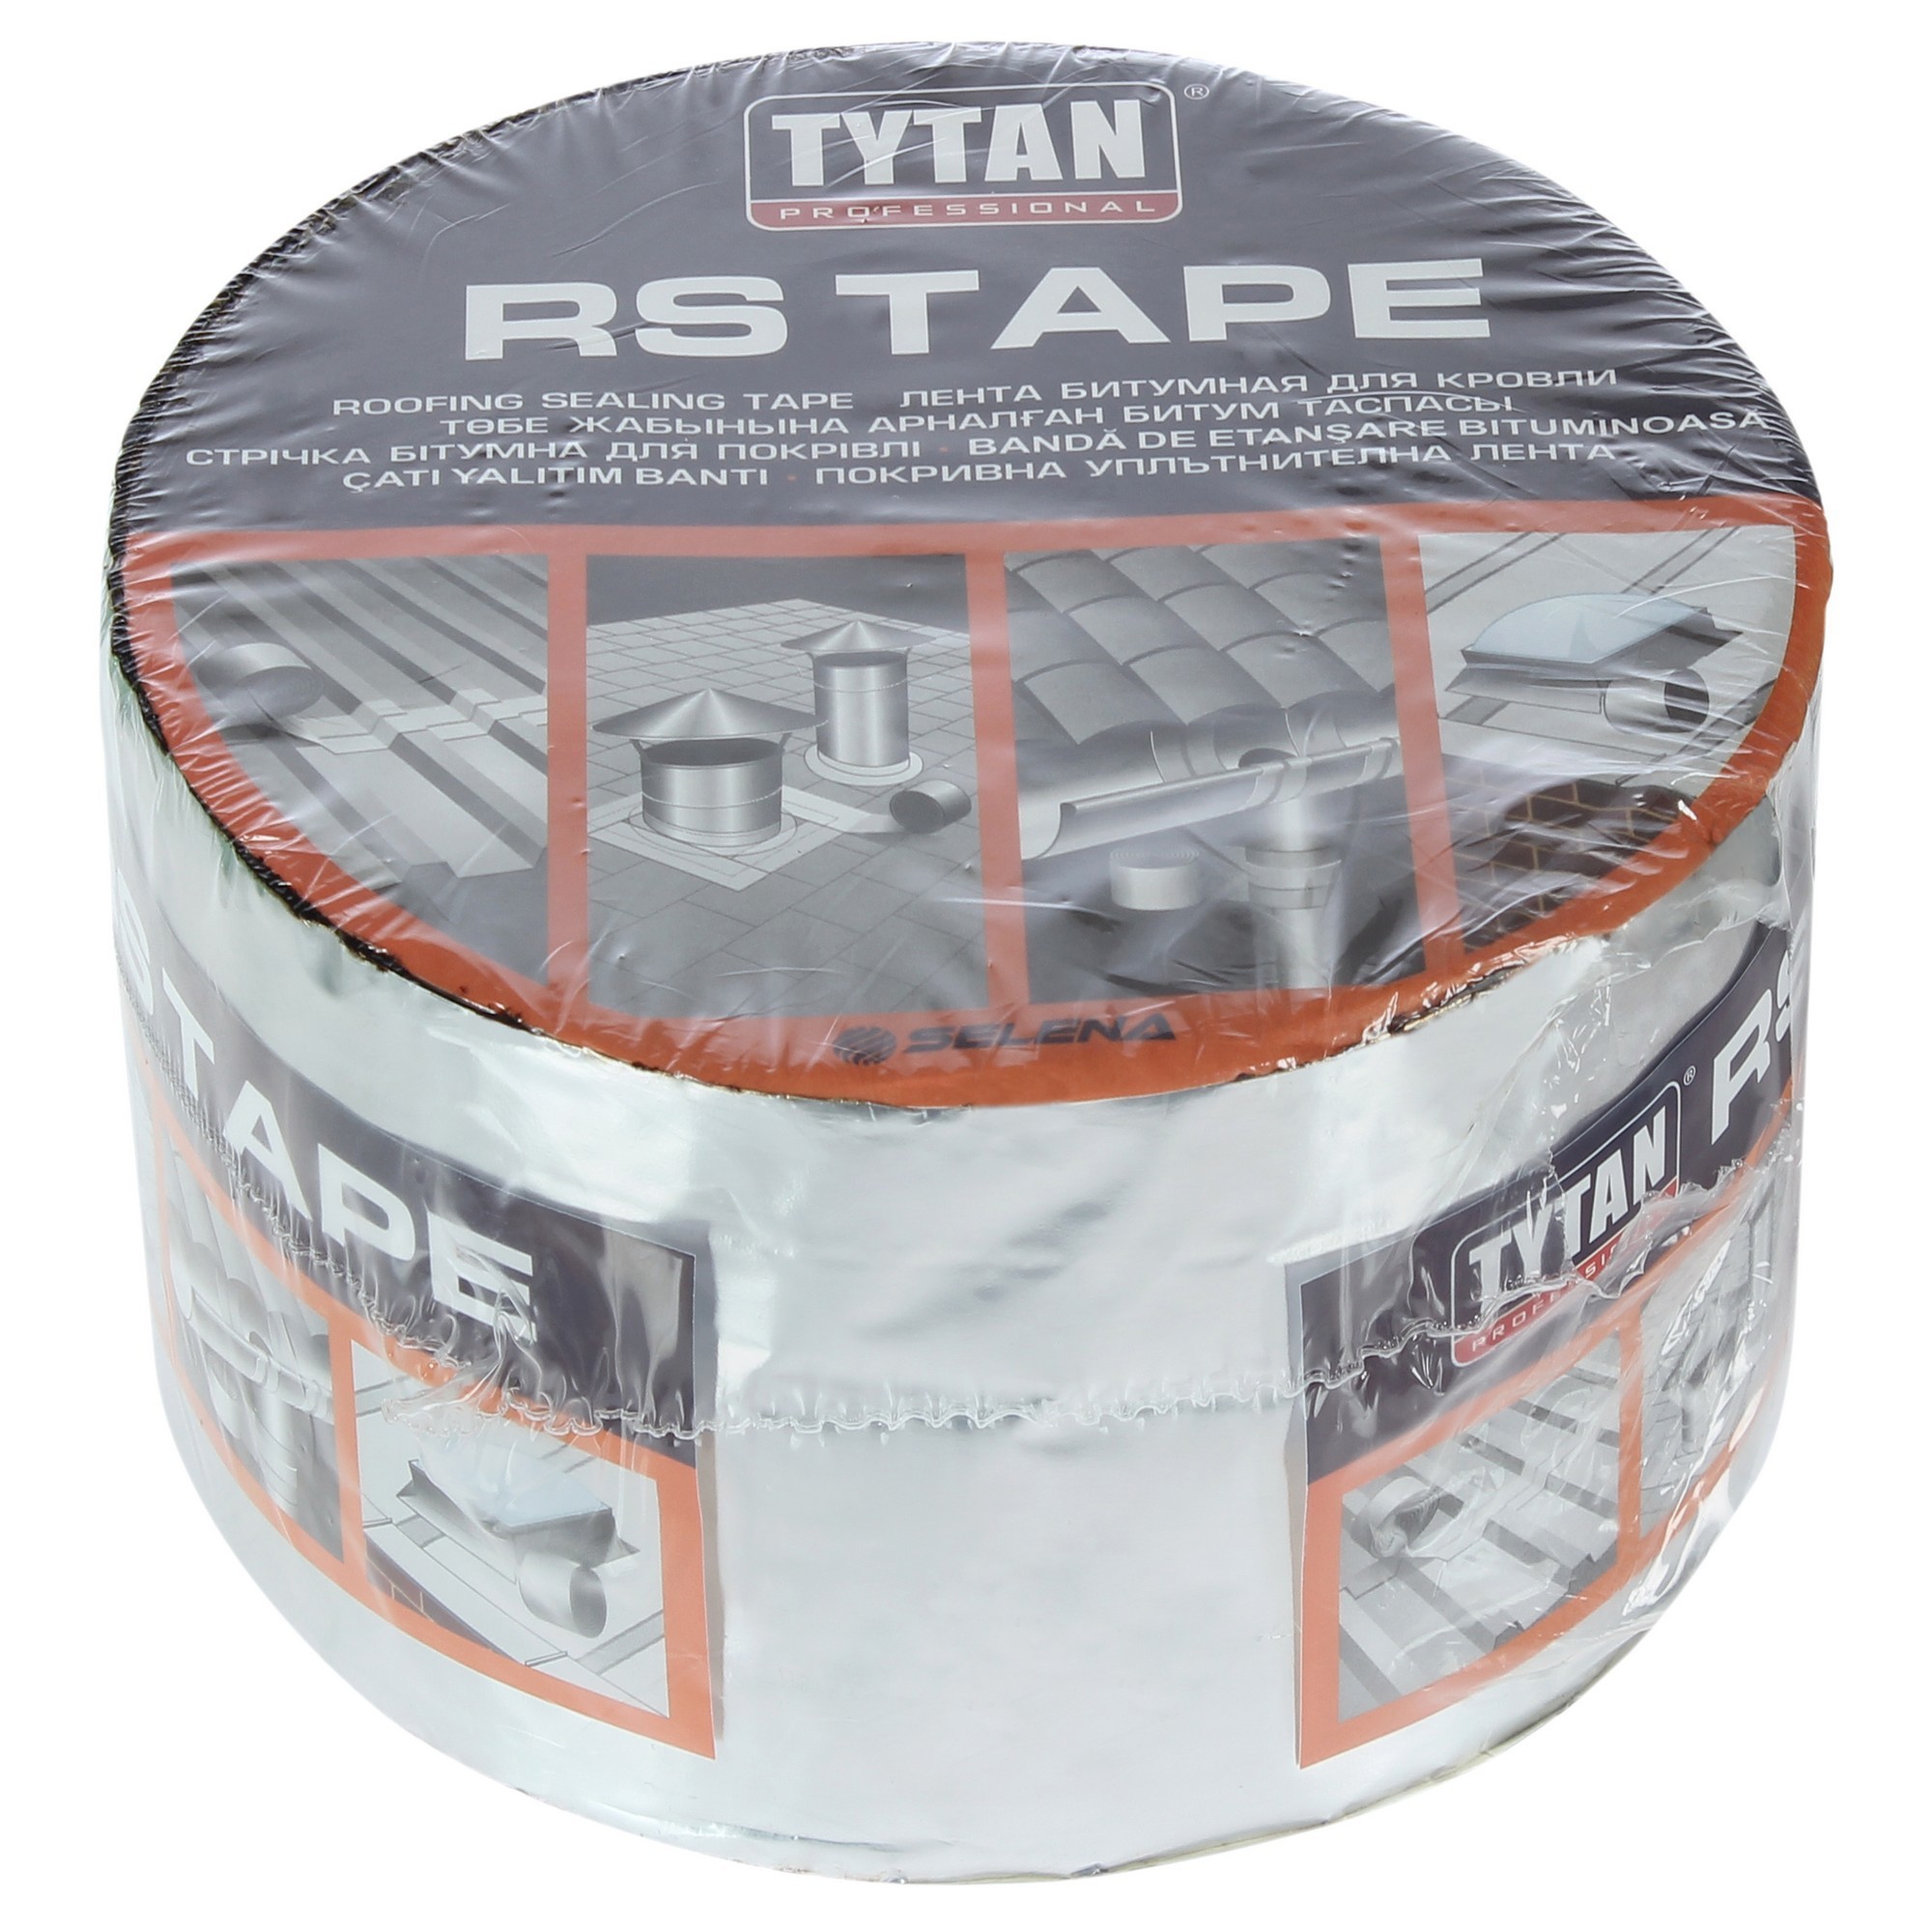 Скотч для кровли. RS Tape лента битумная для кровли 10см x 10м алюминий. Кровельная битумная герметизирующая лента 10см*10м антрацит Titan. Лента битумная для кровли Tytan RS Tape 15 см x 10 м алюминиевая. Лента битумная для кровли Tytan professional RS Tape, 10 см х 10.